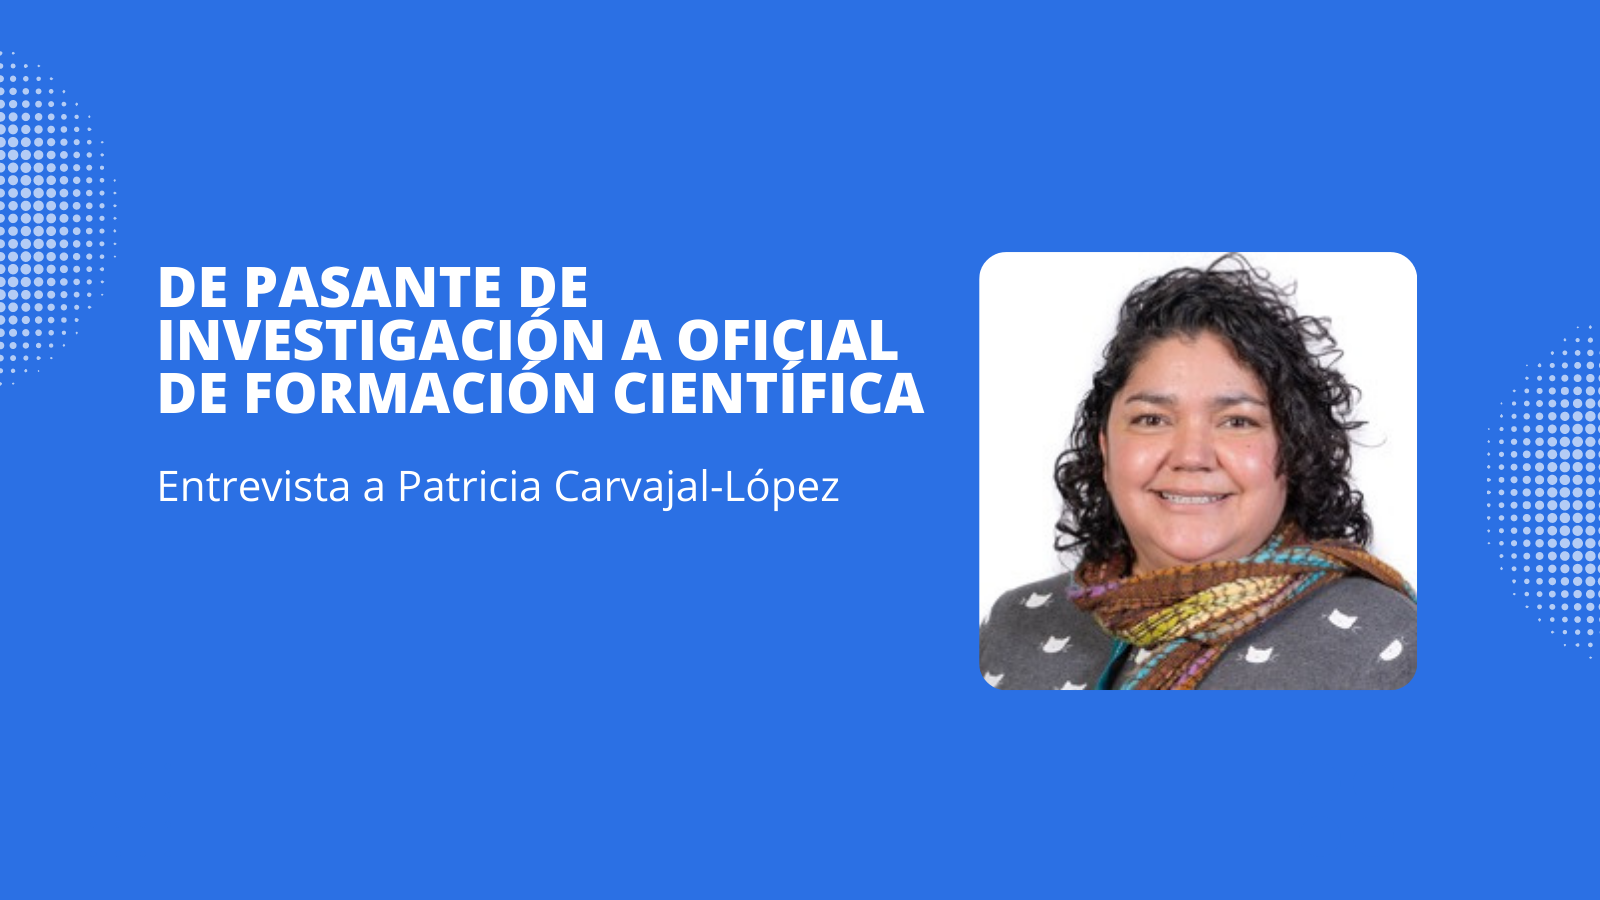 De Pasante de investigación a Oficial de formación científica, Entrevista a Patricia Carvajal López